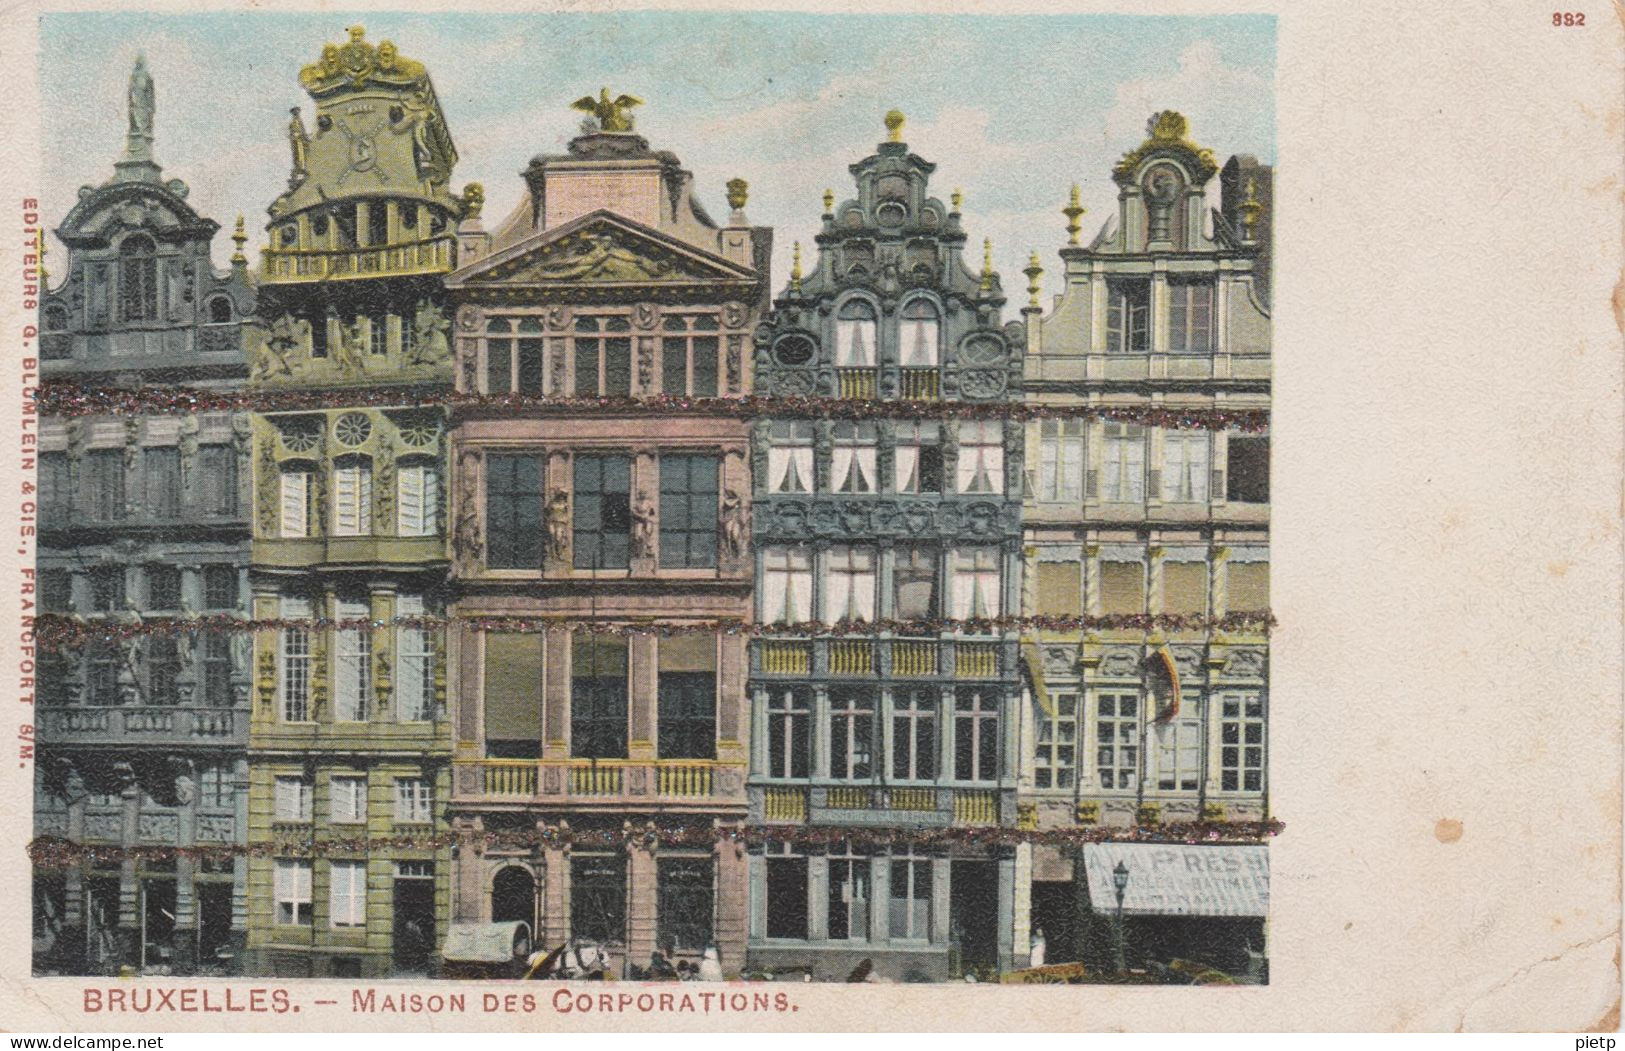 Bruxelles - éditeur BLUMLEIN - BRUXELLES. – MAISON DES CORPORATIONS - Monuments, édifices